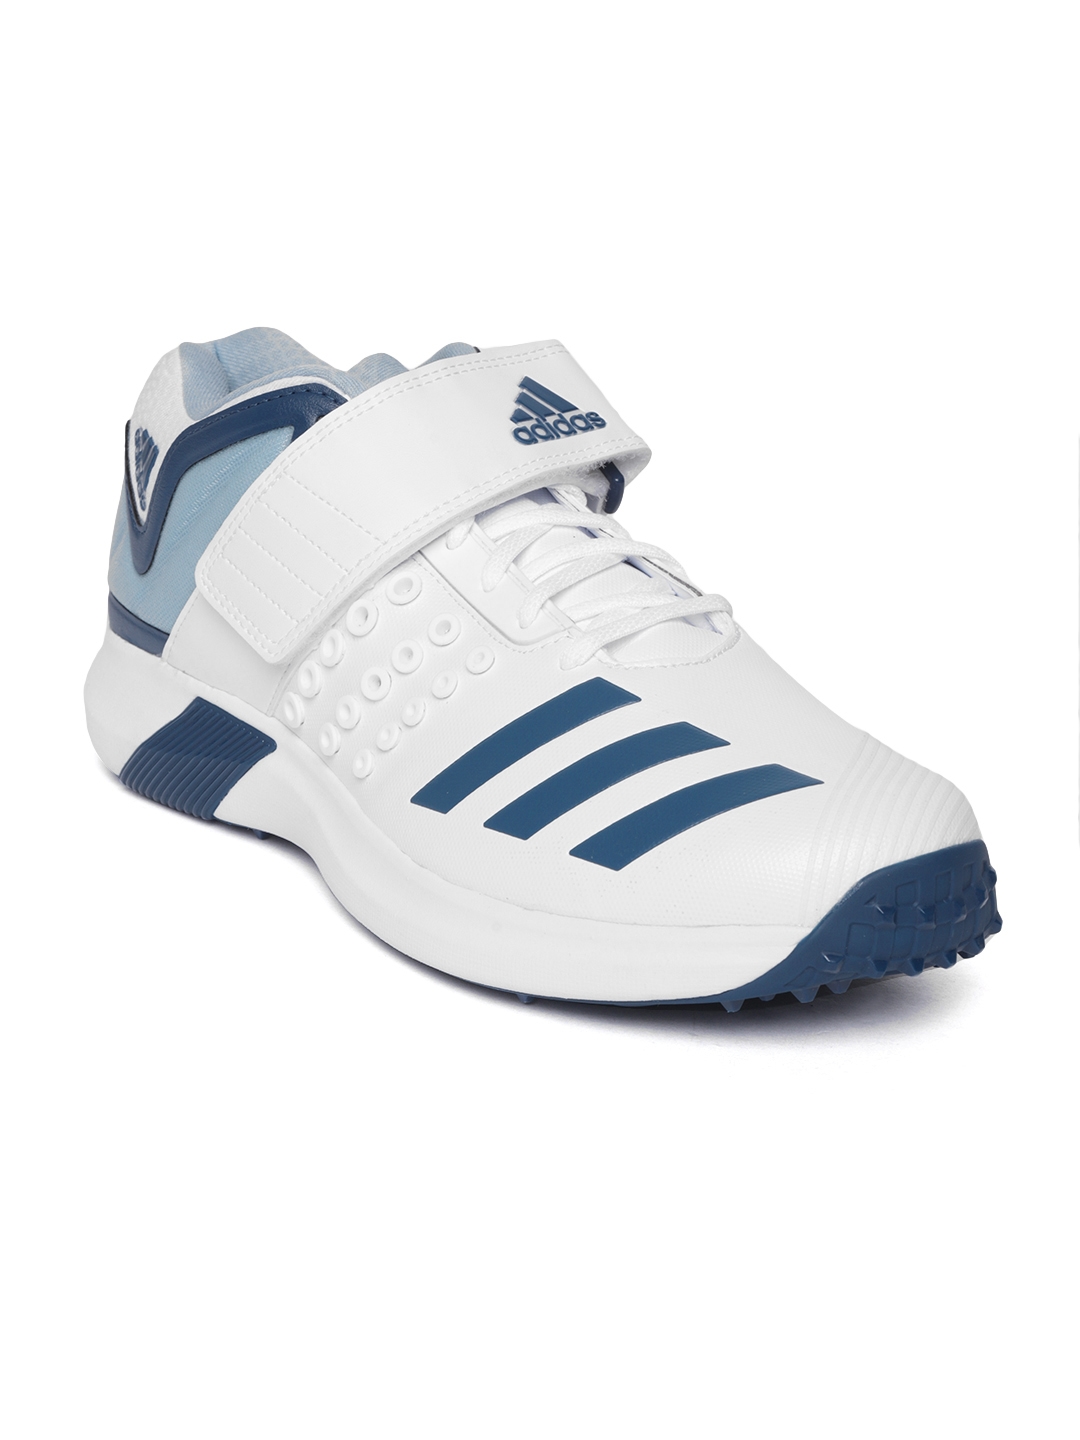 adidas cricket shoes jabong